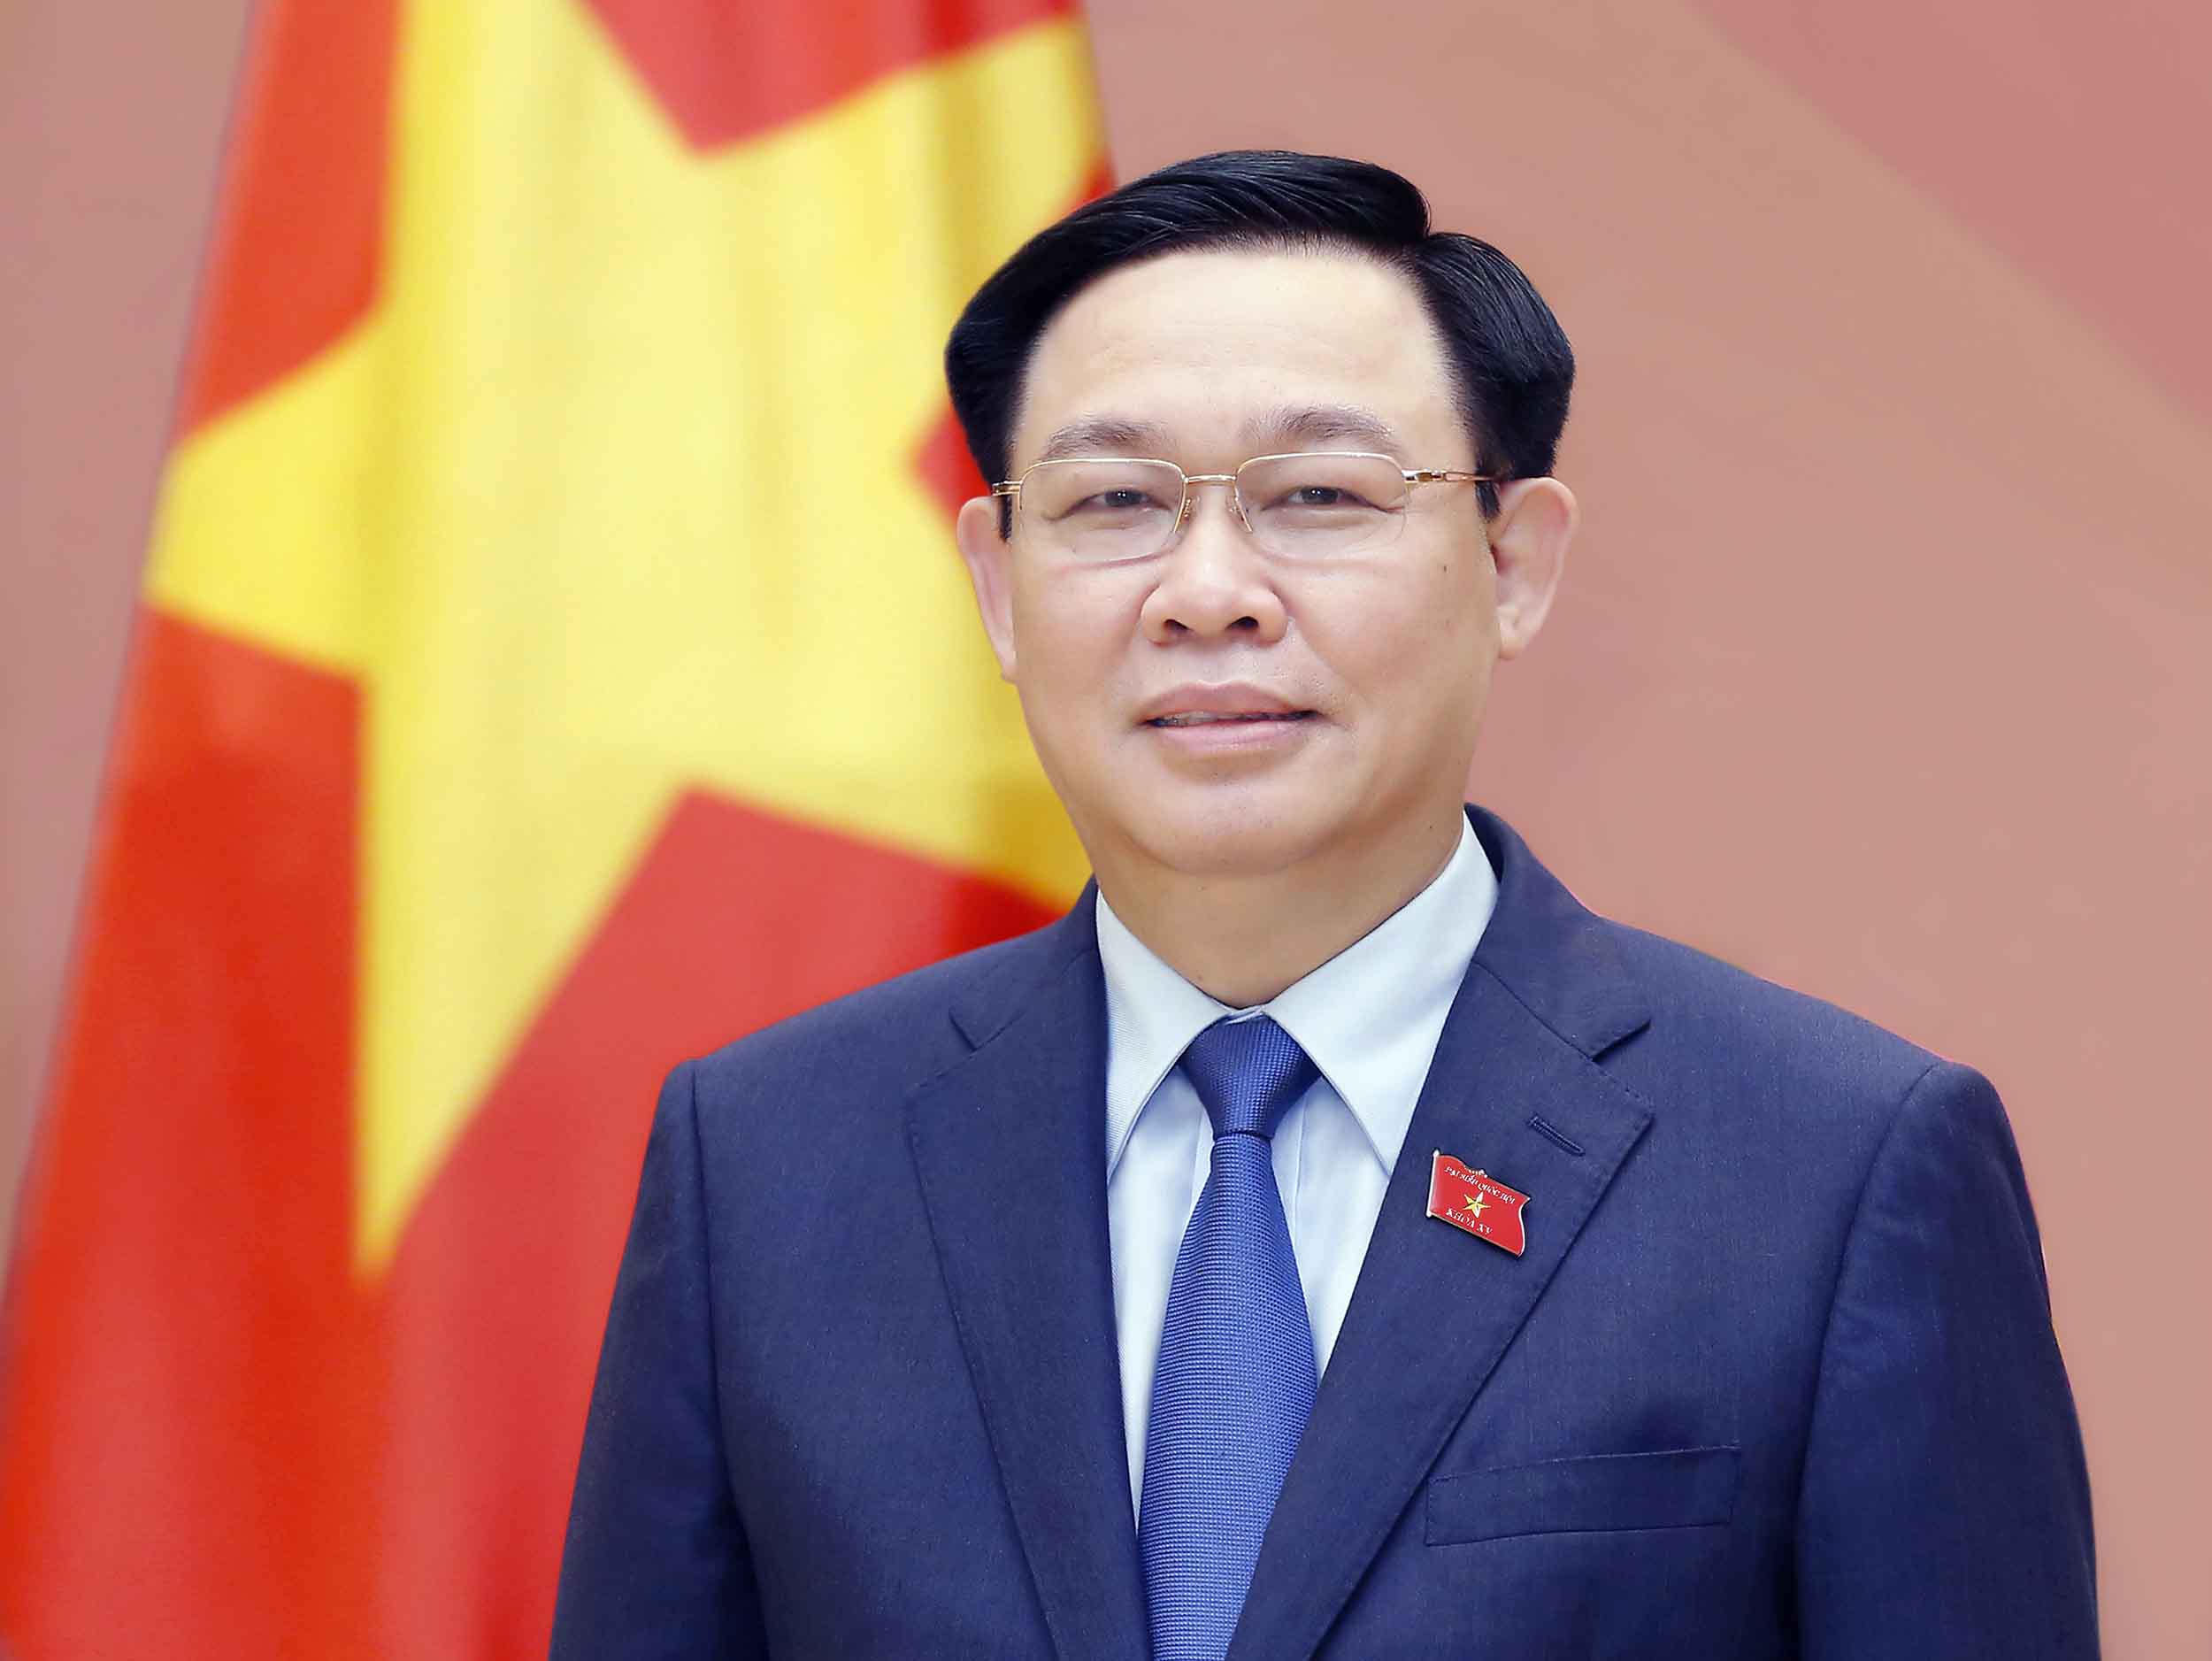 TIN NÓNG 24 GIỜ QUA: Ông Vương Đình Huệ thôi chức Chủ tịch Quốc hội; bắt cựu Chủ tịch UBND tỉnh Bình Thuận